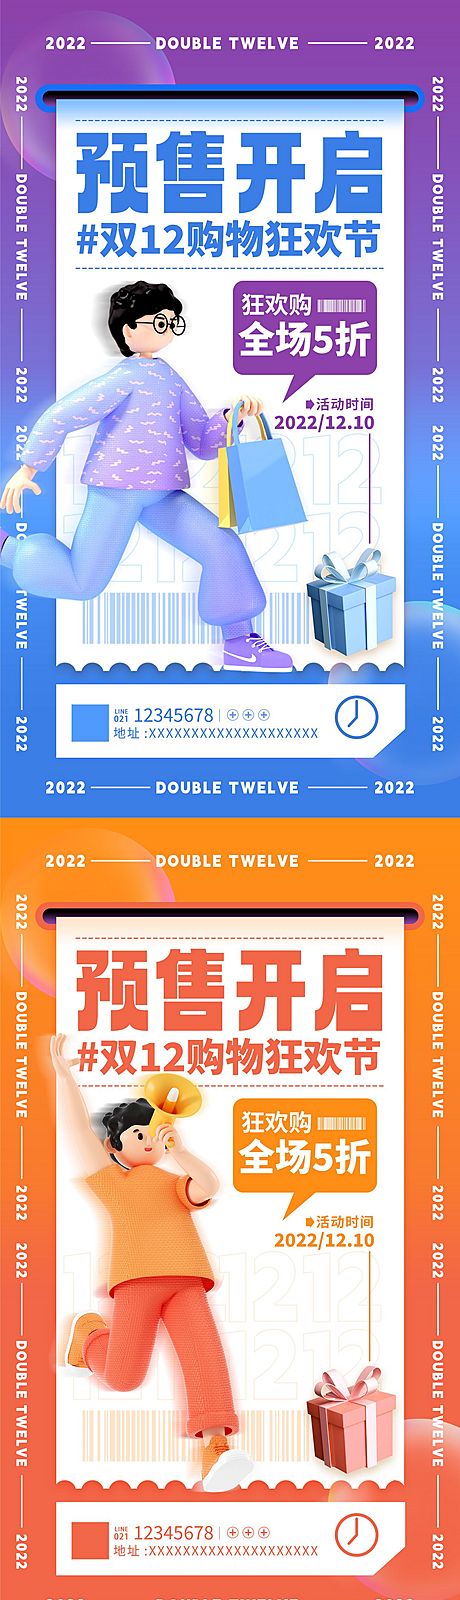 仙图网-双十二购物狂欢节预售促销系列海报